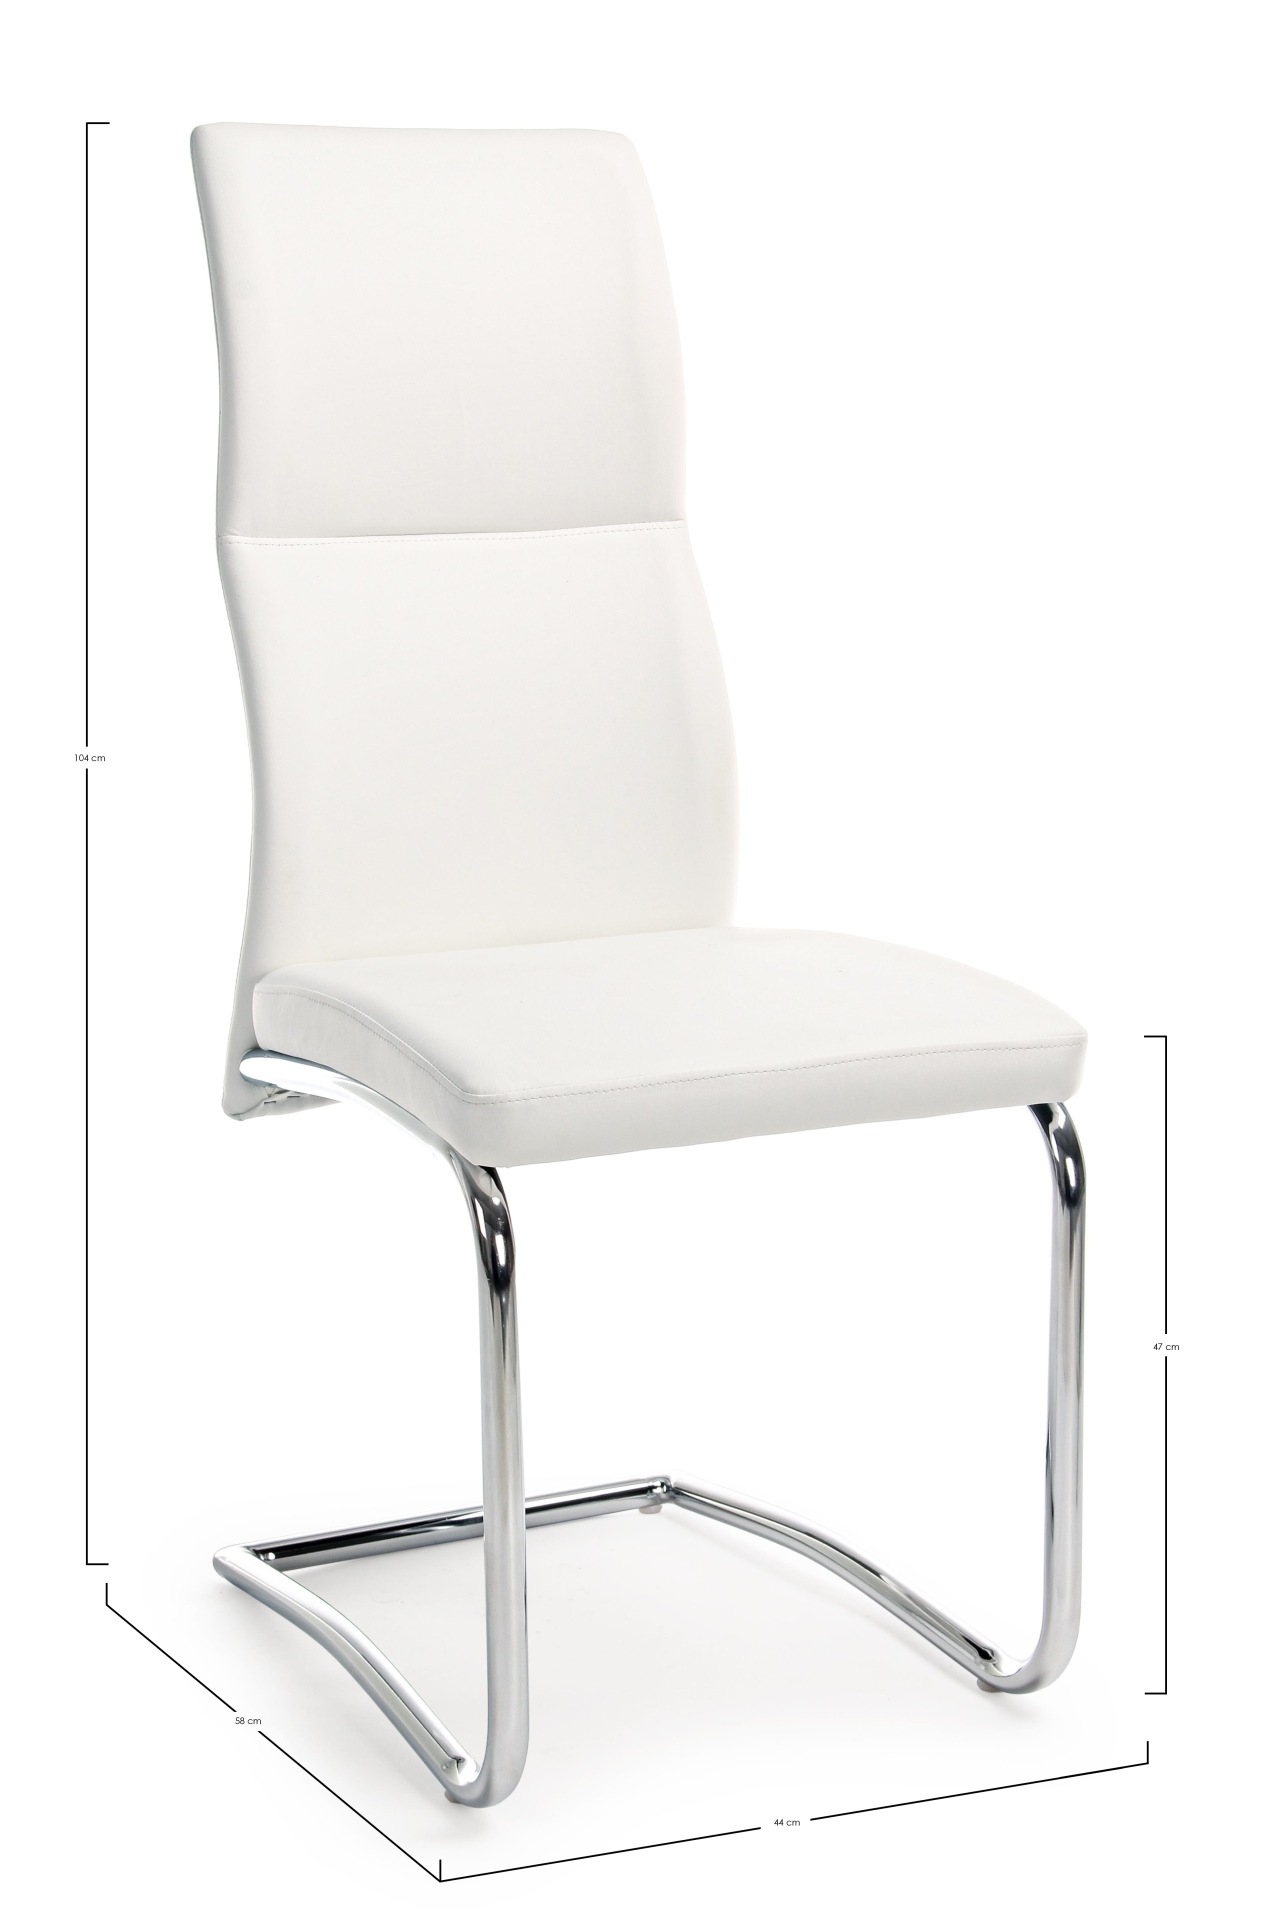 Der Esszimmerstuhl Thelma überzeugt mit seinem modernem Design. Gefertigt wurde der Stuhl aus Kunstleder, welches einen weißen Farbton besitzt. Das Gestell ist aus Metall und ist Silber. Die Sitzhöhe beträgt 47 cm.